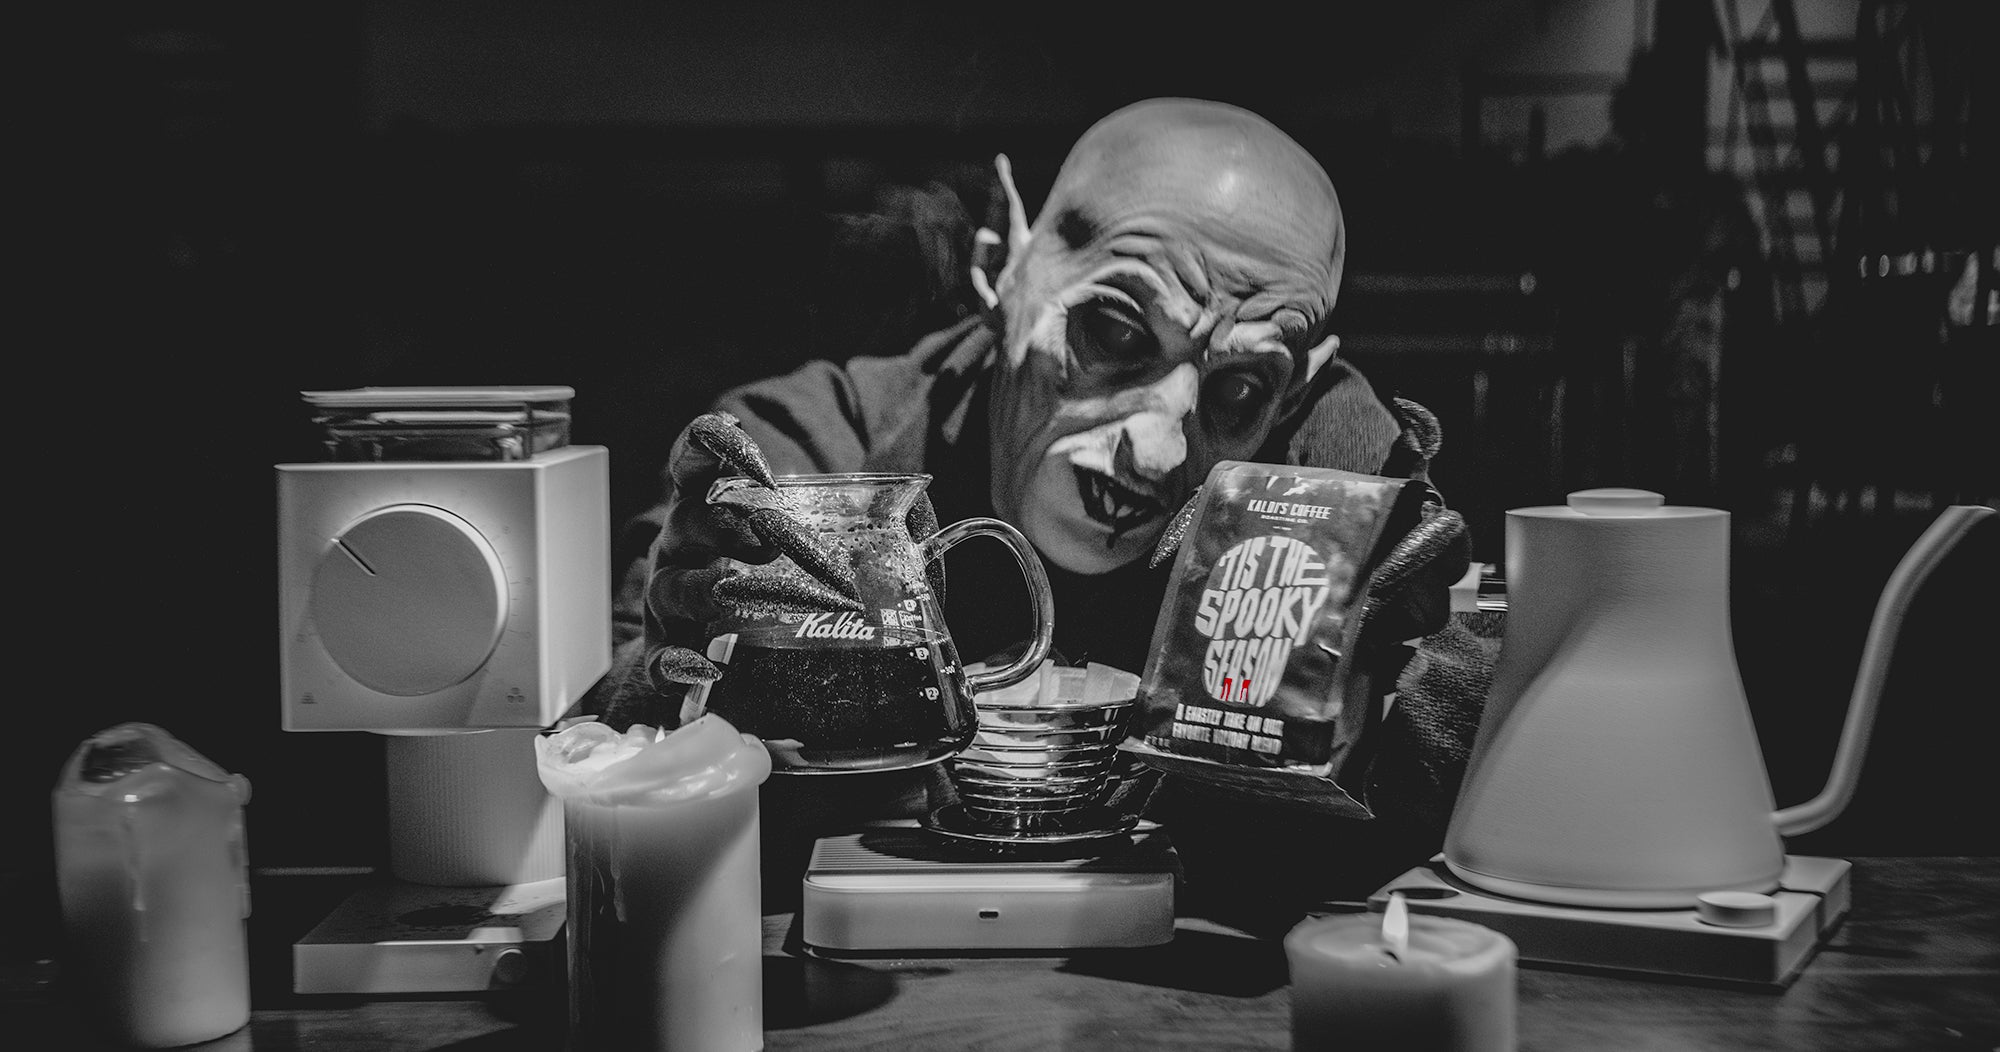 Nosferatu brews a pour over using 'Tis the Spooky blend